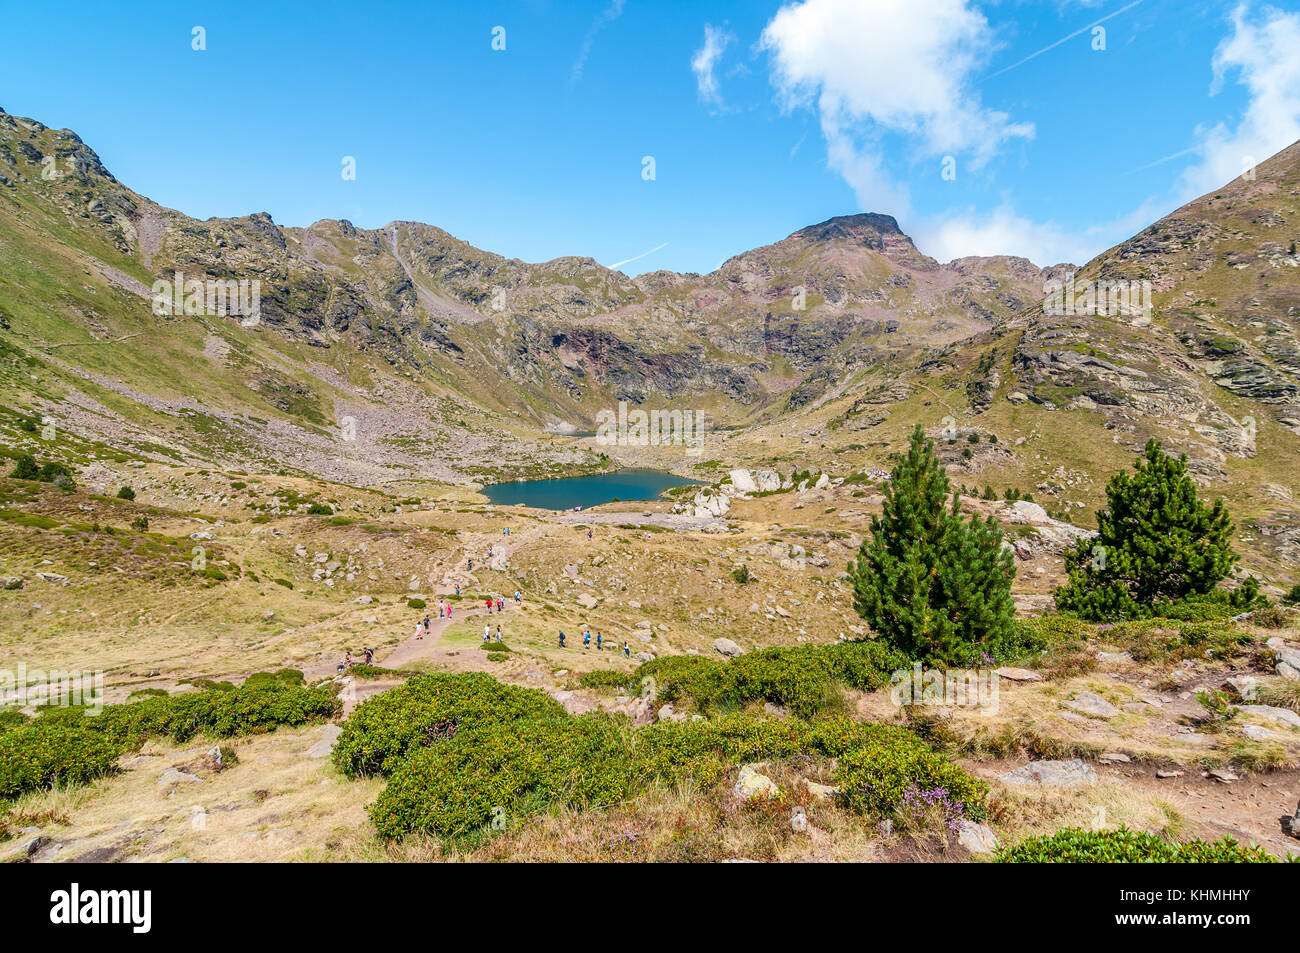 Angesichts der hohen See namens "Estany del mig' - midle See, in der Nähe von Ordino mit einigen Menschen wandern und zwei mountain pine Auf der Rechten, Tristai Stockfoto